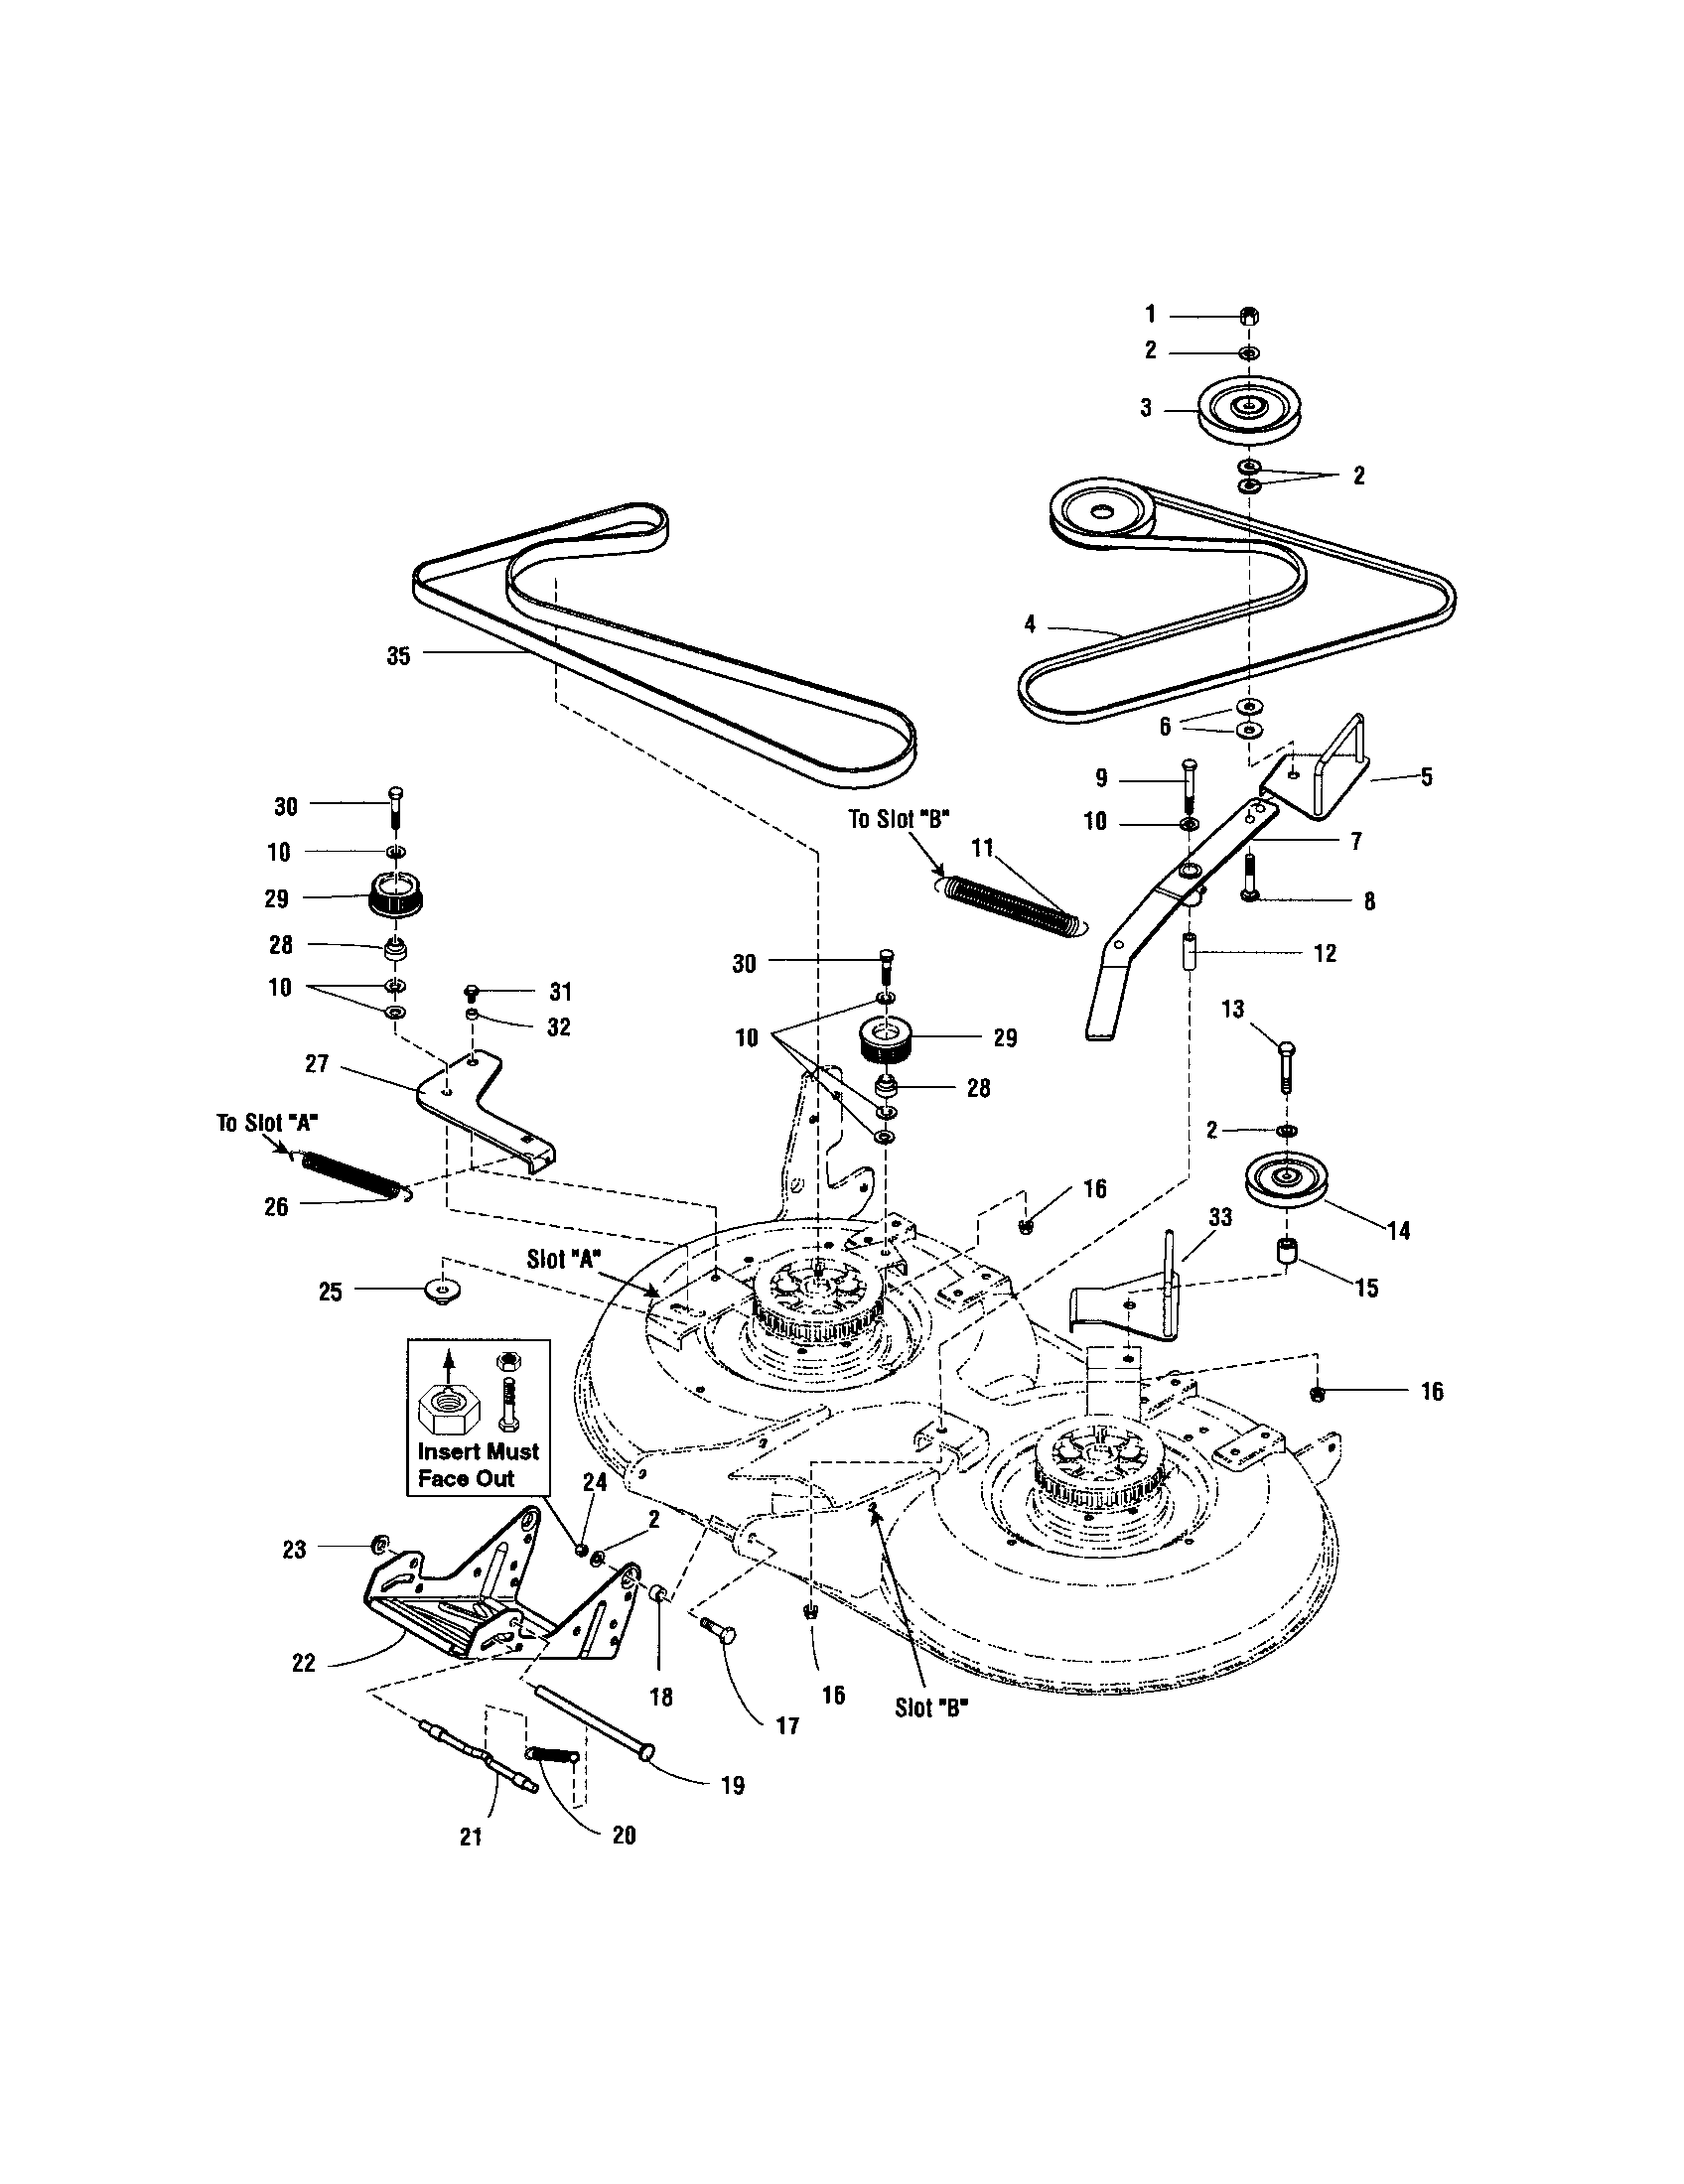 Dixie Chopper Wiring Diagram